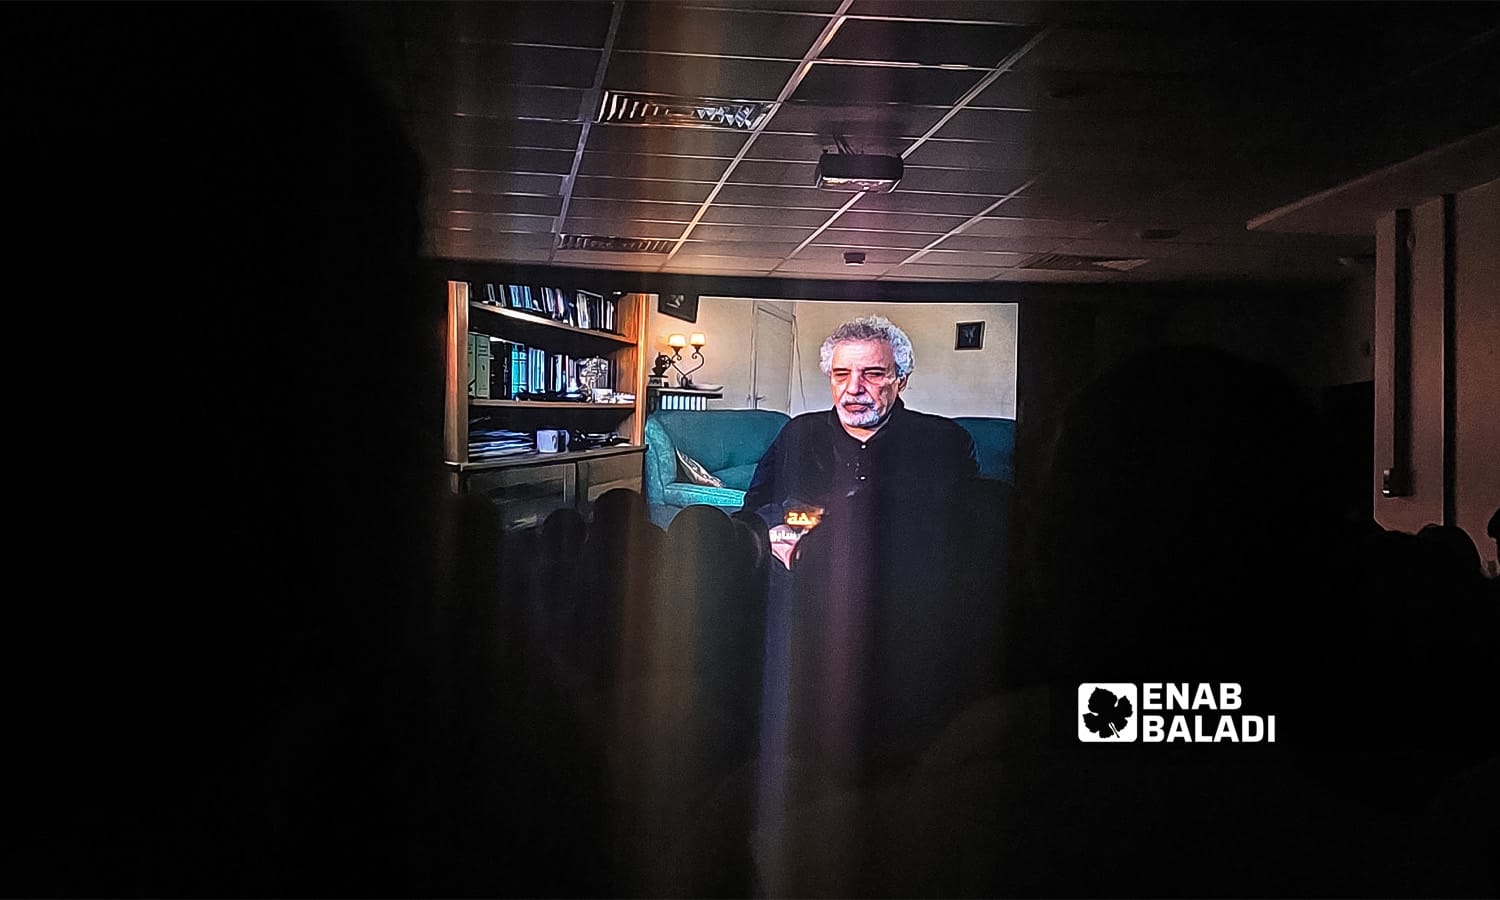 الكاتب السوري مصطفى خليفة يتحدث في فيلم "صراع البقاء" خلال عرضه في "المنتدى السوري"_ كانون الثاني 2023 (عنب بلدي/ حسام المحمود)